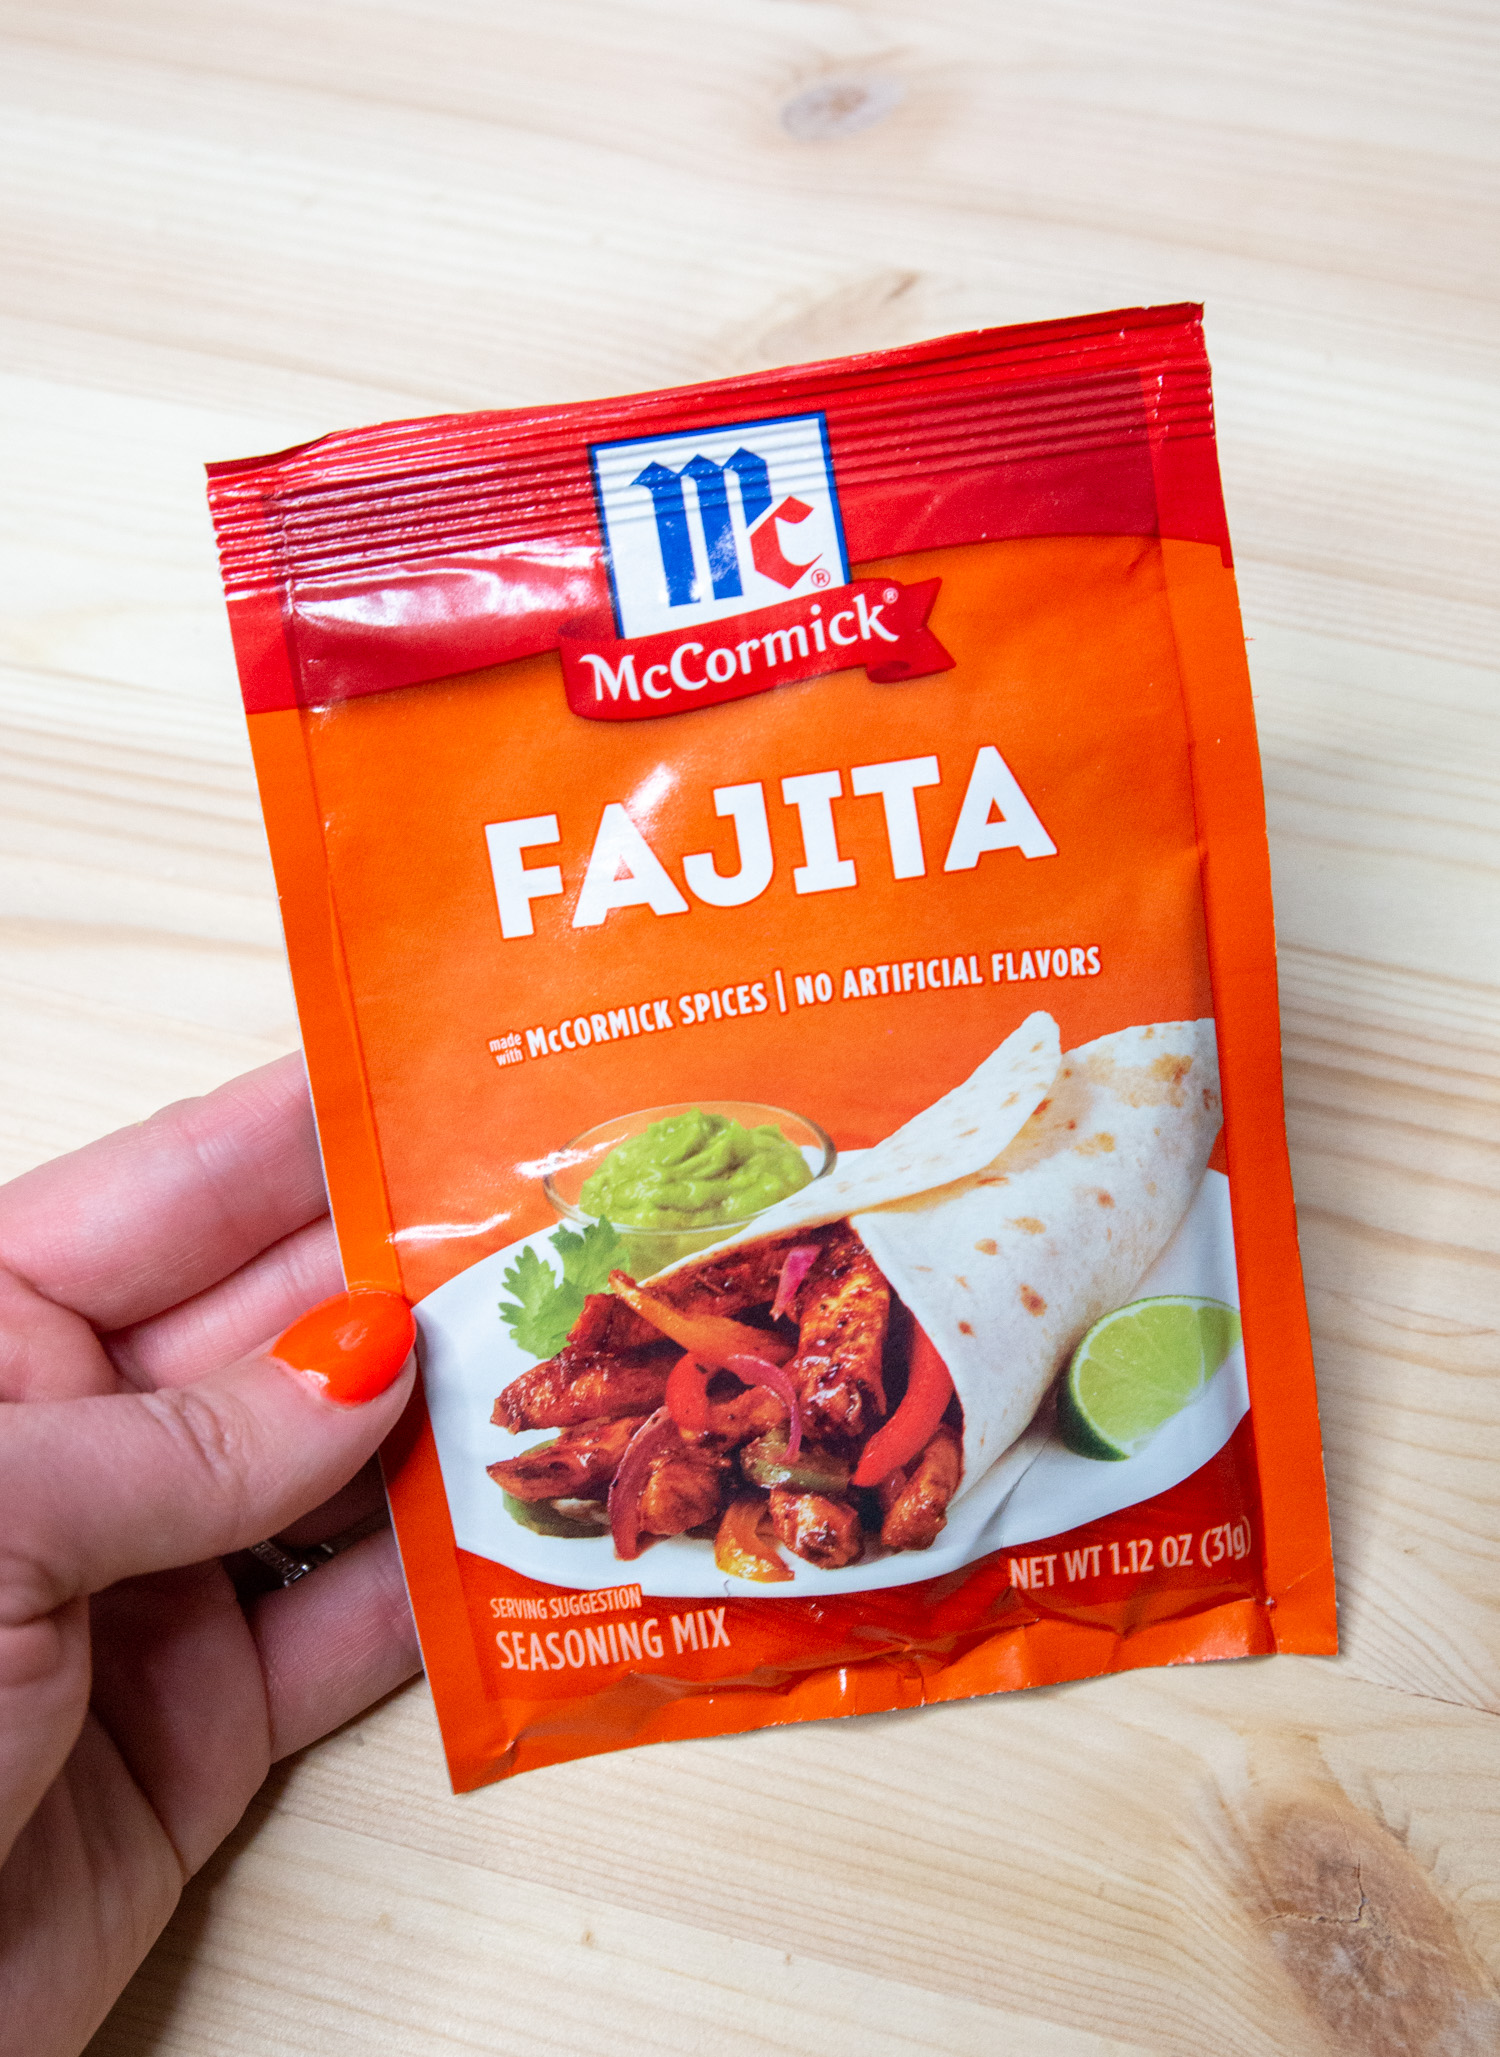 A package of fajita seasoning